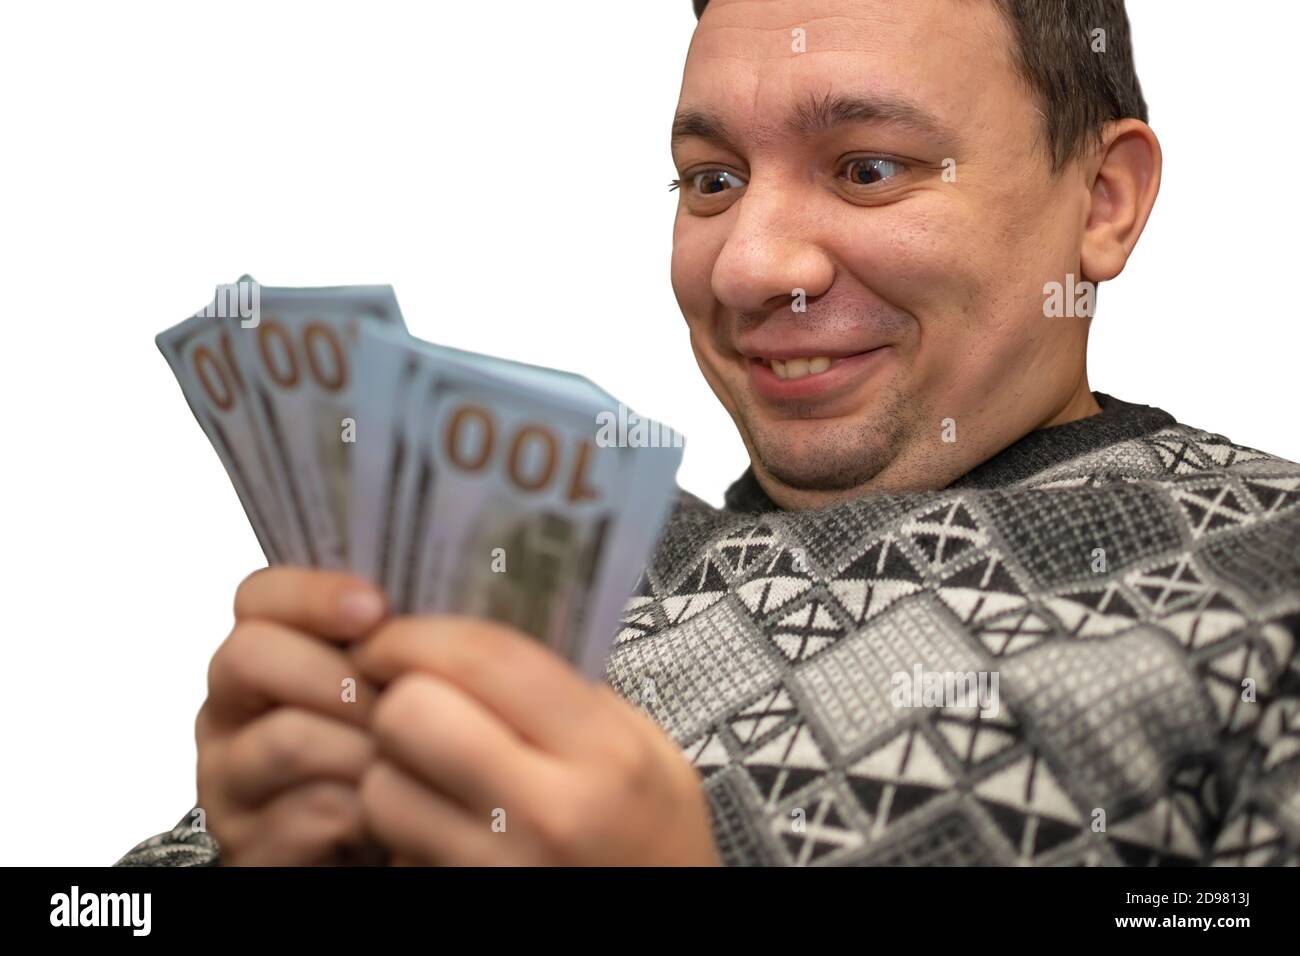 il volto felice, soddisfatto, anormale, pazzo di un uomo che tiene i soldi e lo guarda con un sorriso e piacere Foto Stock